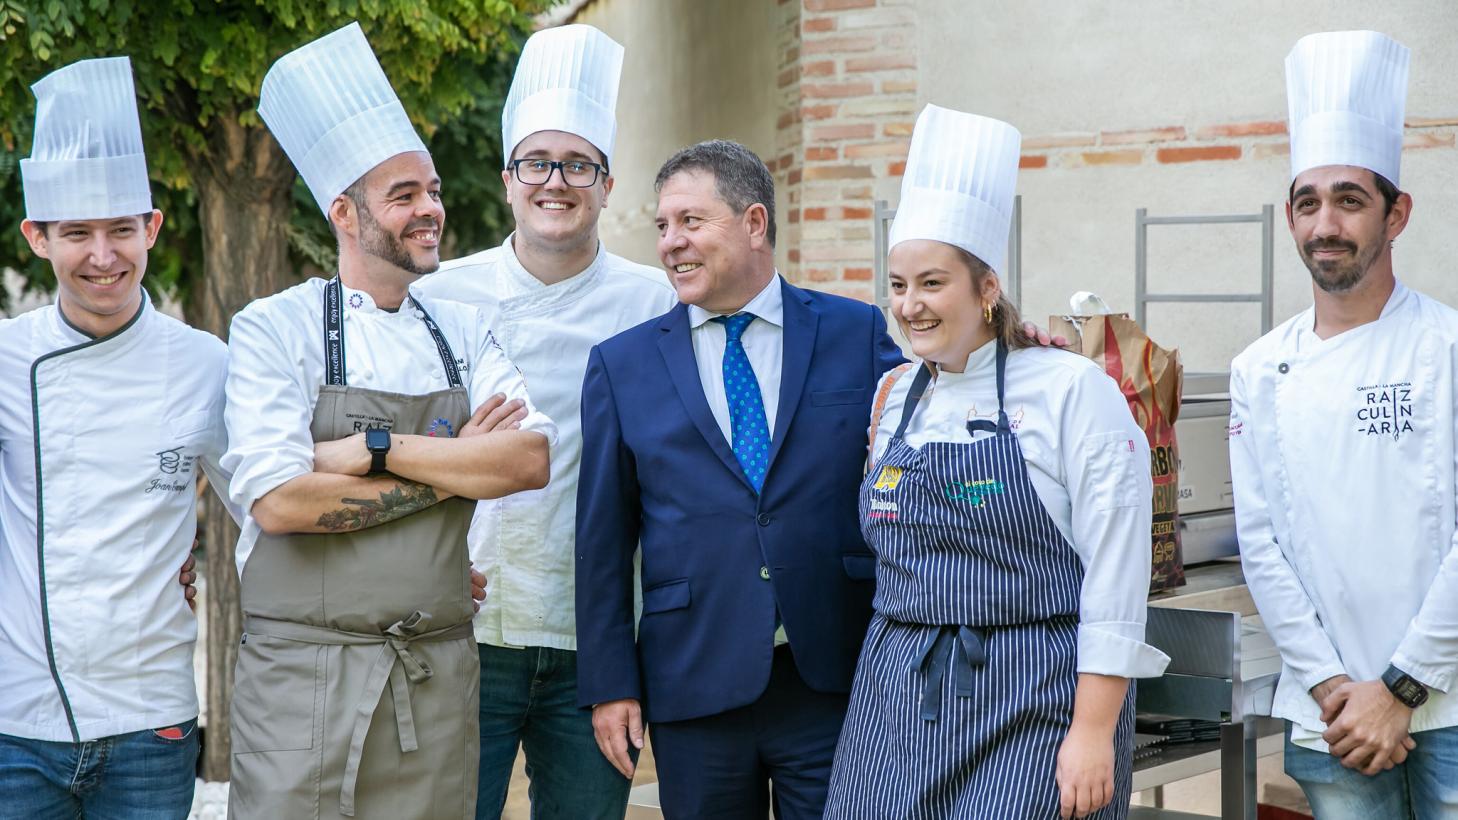 El presidente García-Page subraya “el récord absoluto histórico de la hostelería” en Castilla-La Mancha gracias al impulso de la gastronomía